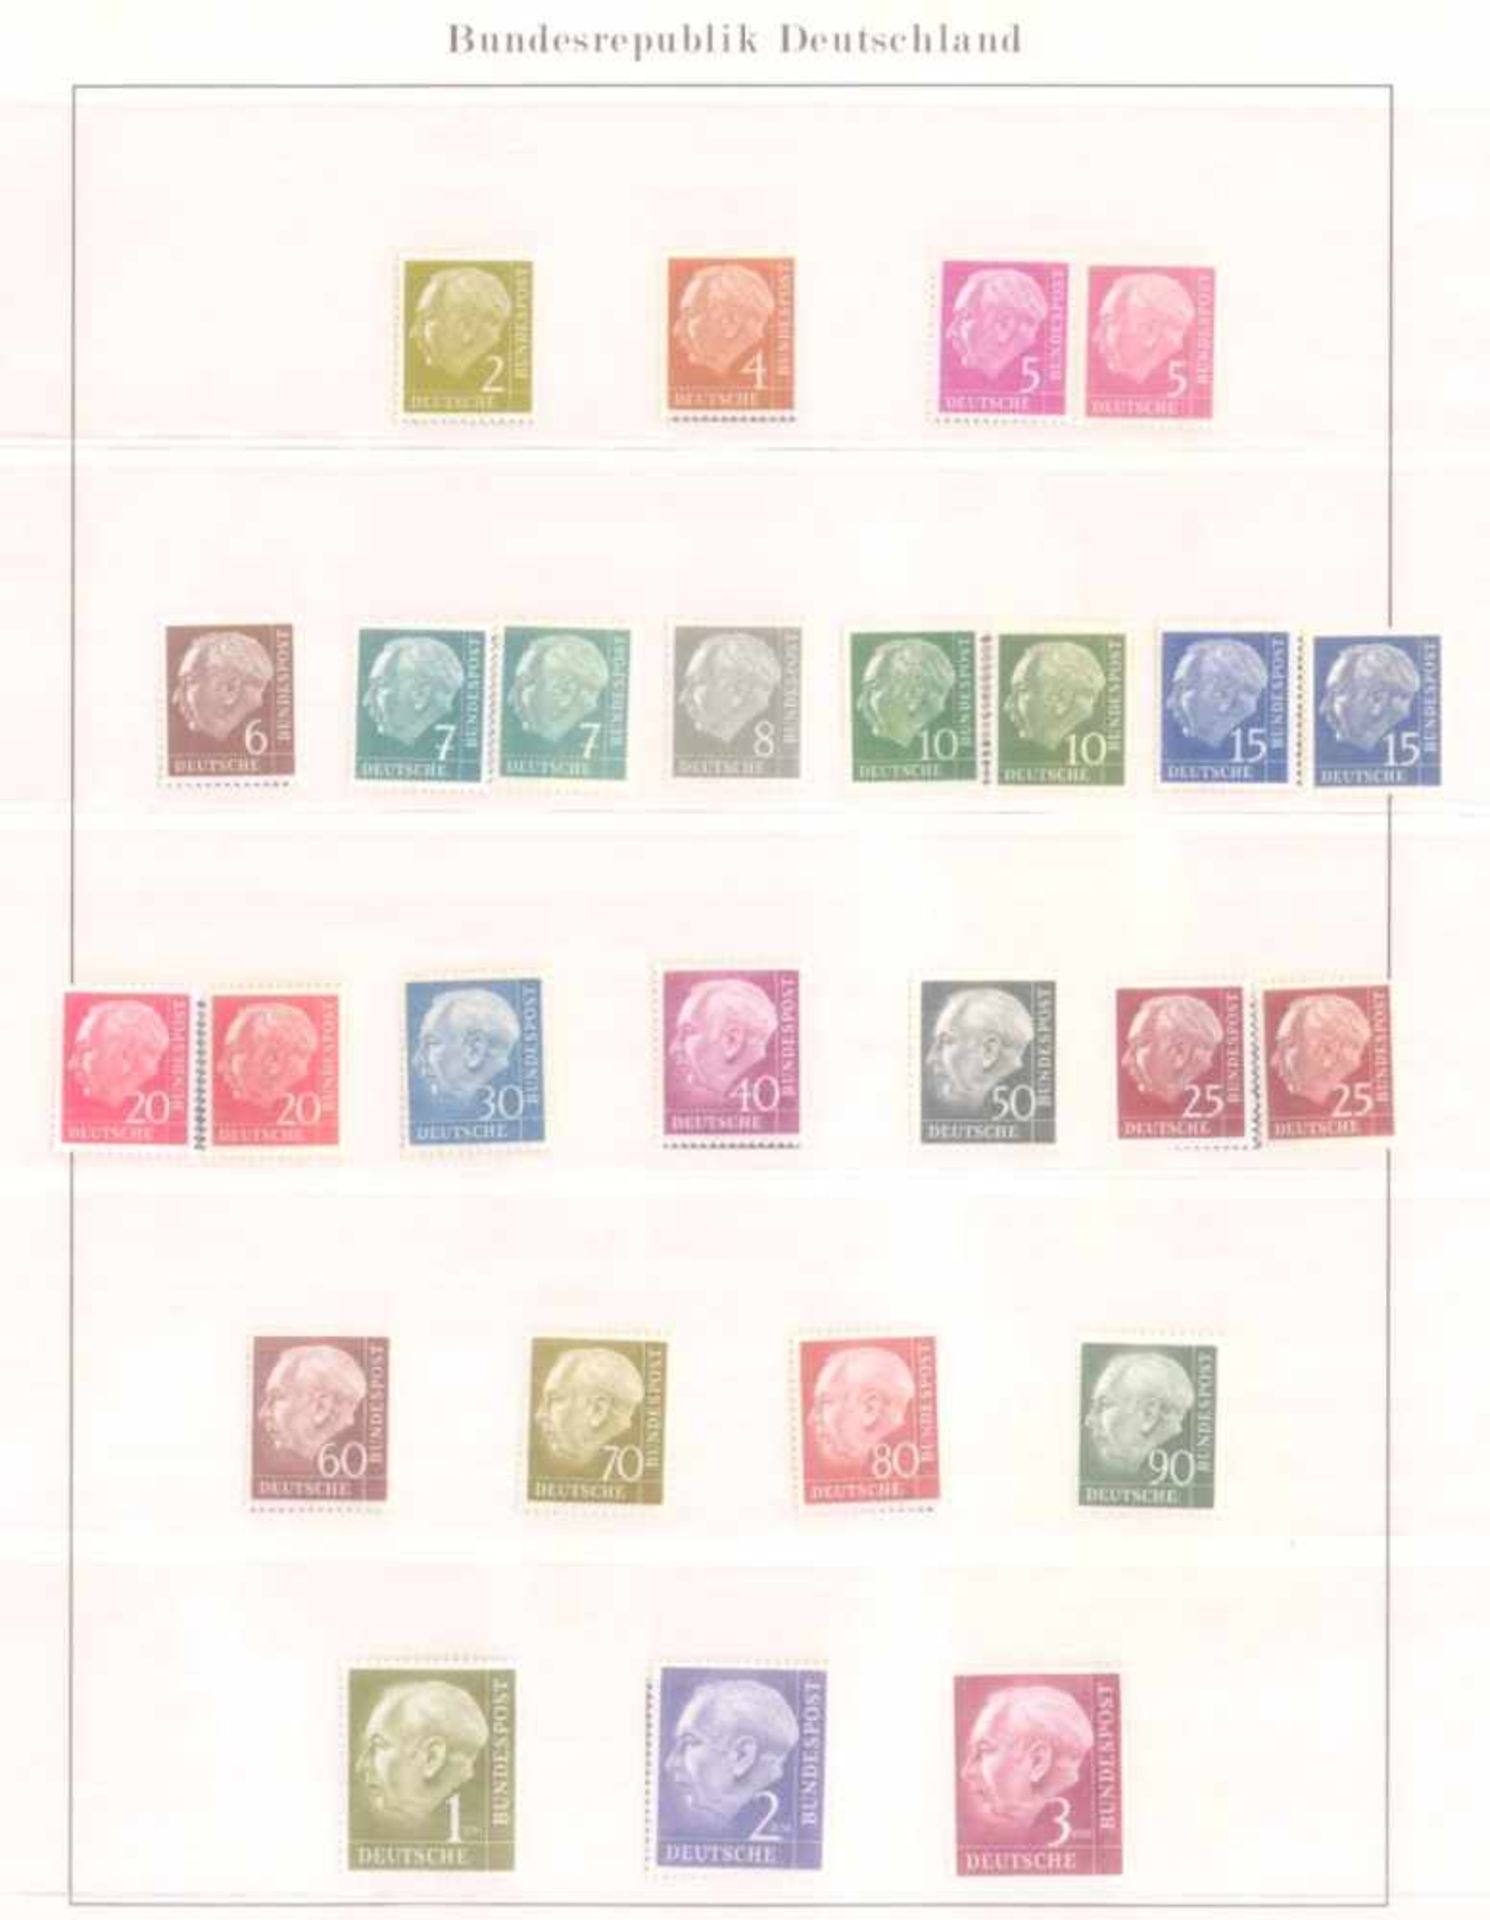 Postfrische Sammlung, Bund 1949-19994 Vordruck-Alben, komplett bis einschließlich 1999. - Bild 5 aus 5